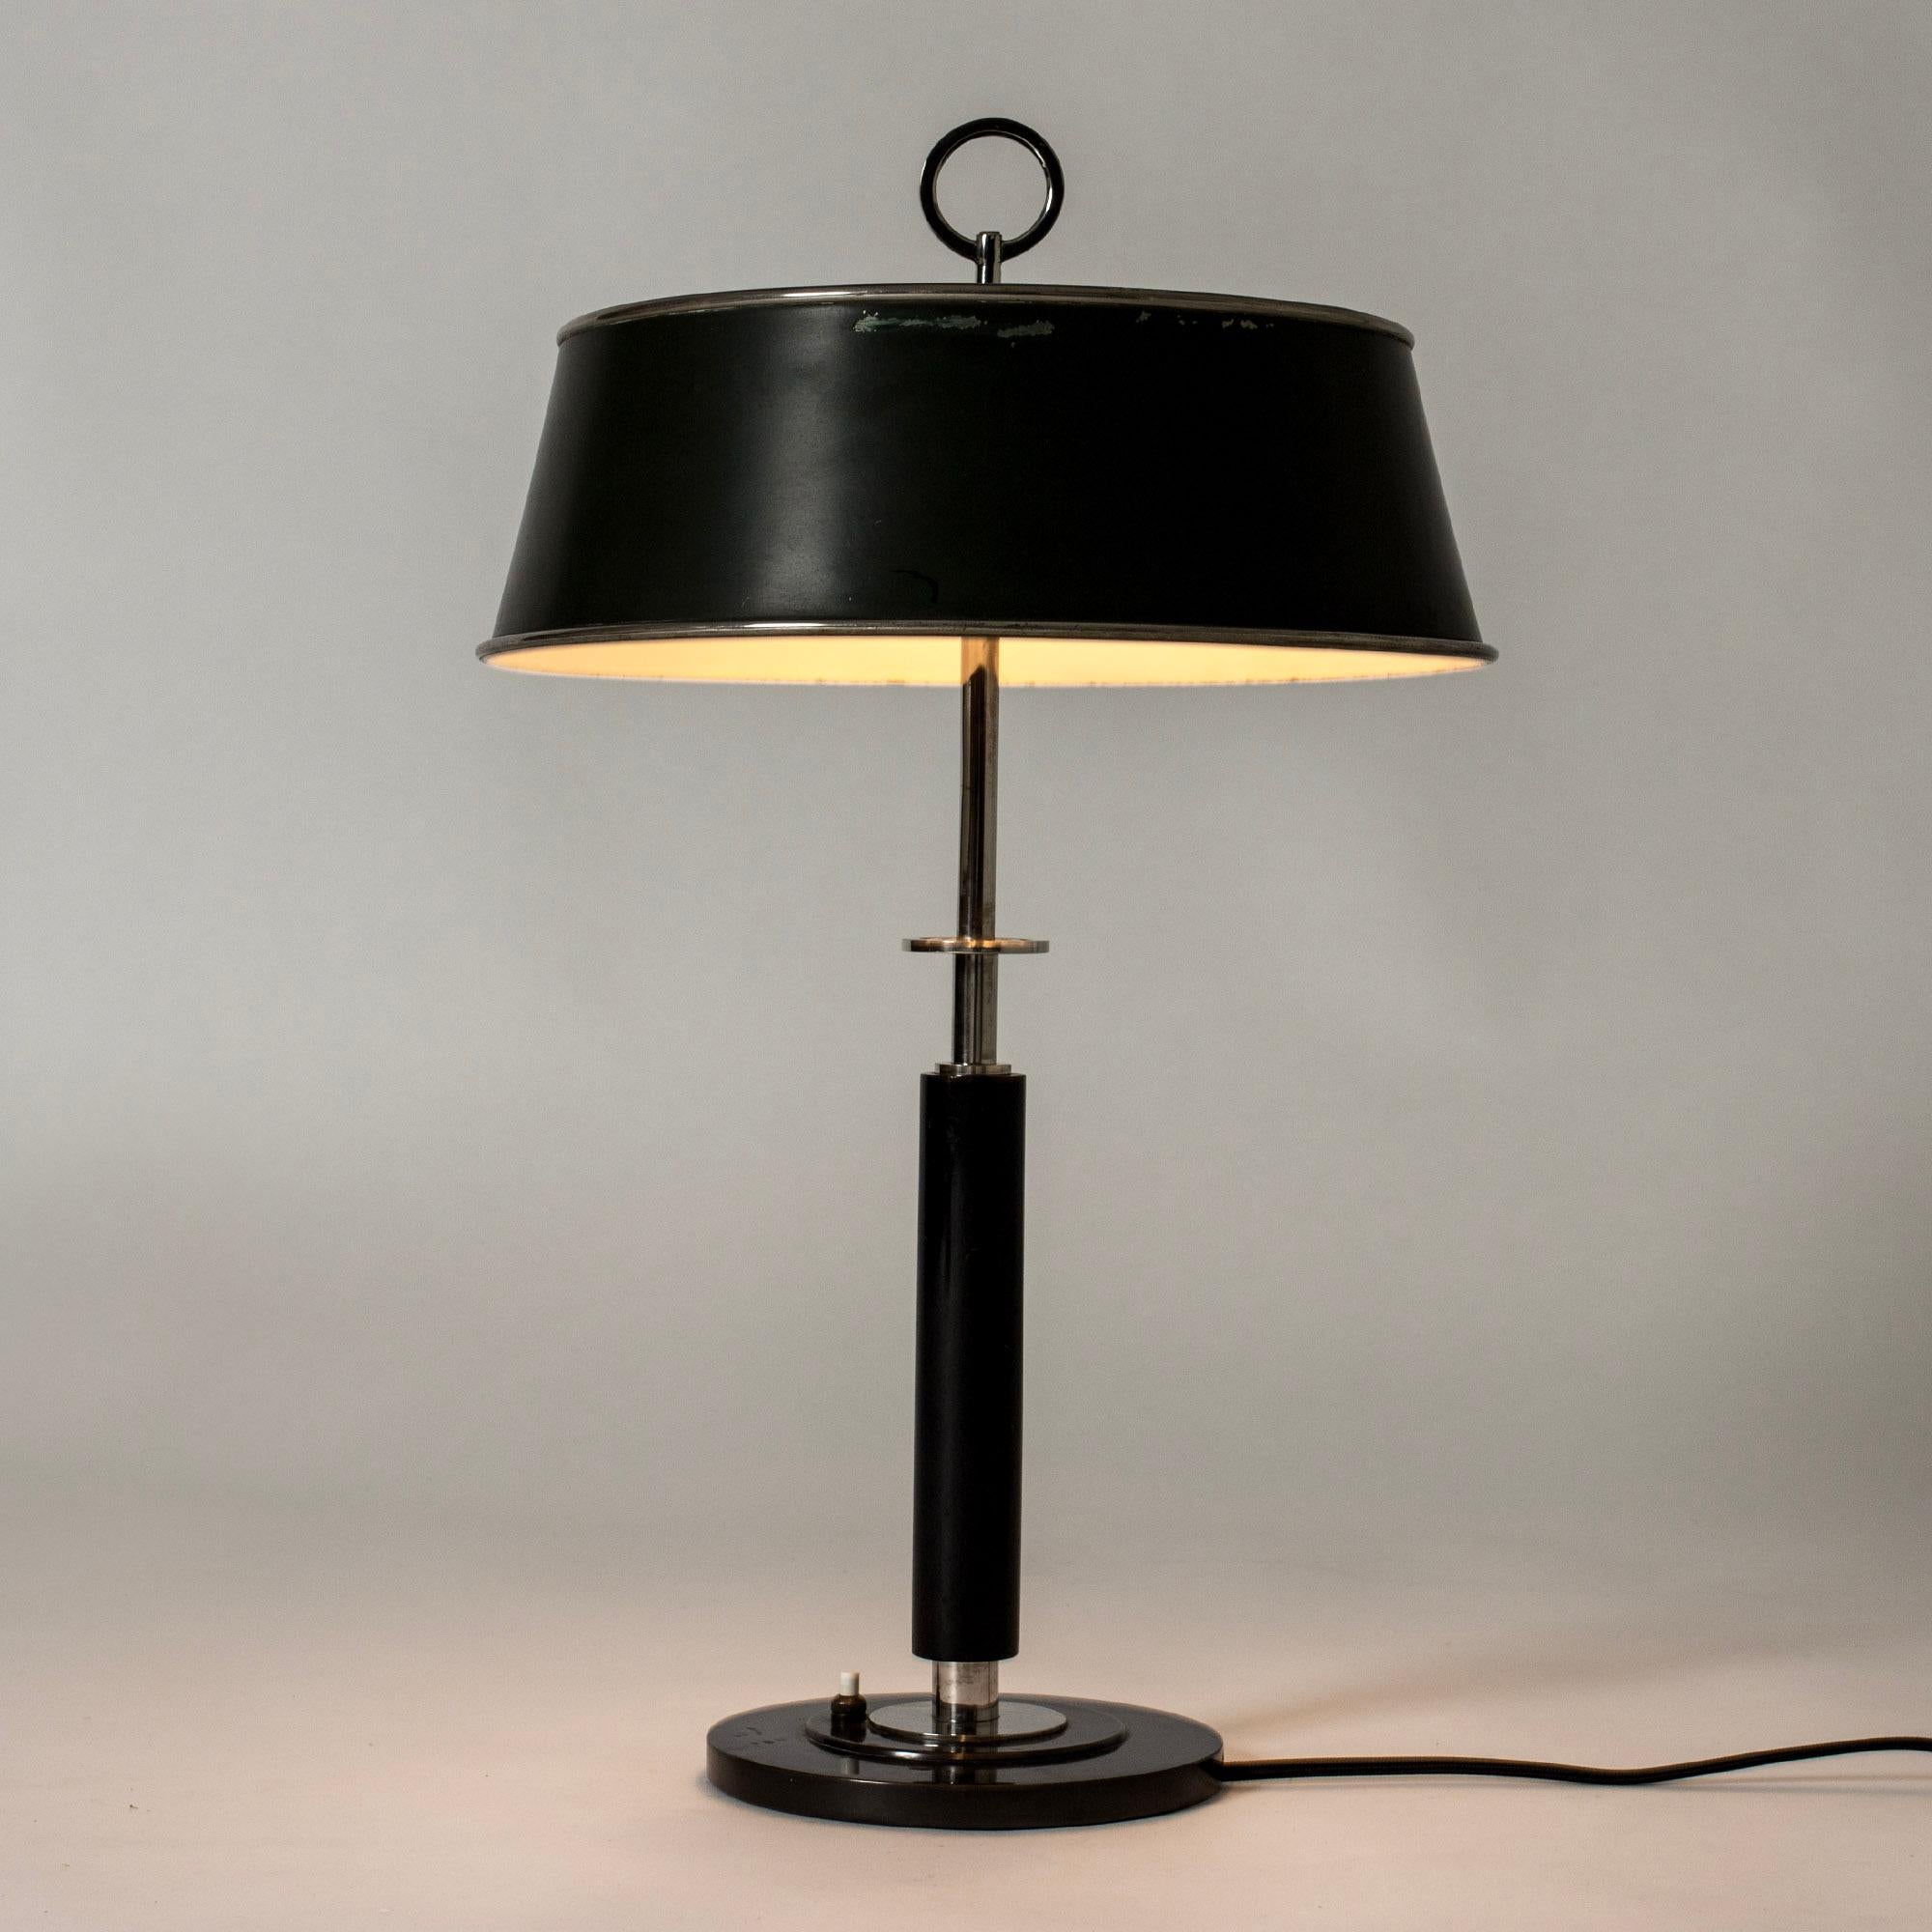 Élégante lampe de table fonctionnaliste d'Erik Tidstrand, en métal avec un abat-jour laqué vert foncé. Poignée et base noires, détails décoratifs en métal blanc dans un design graphique.